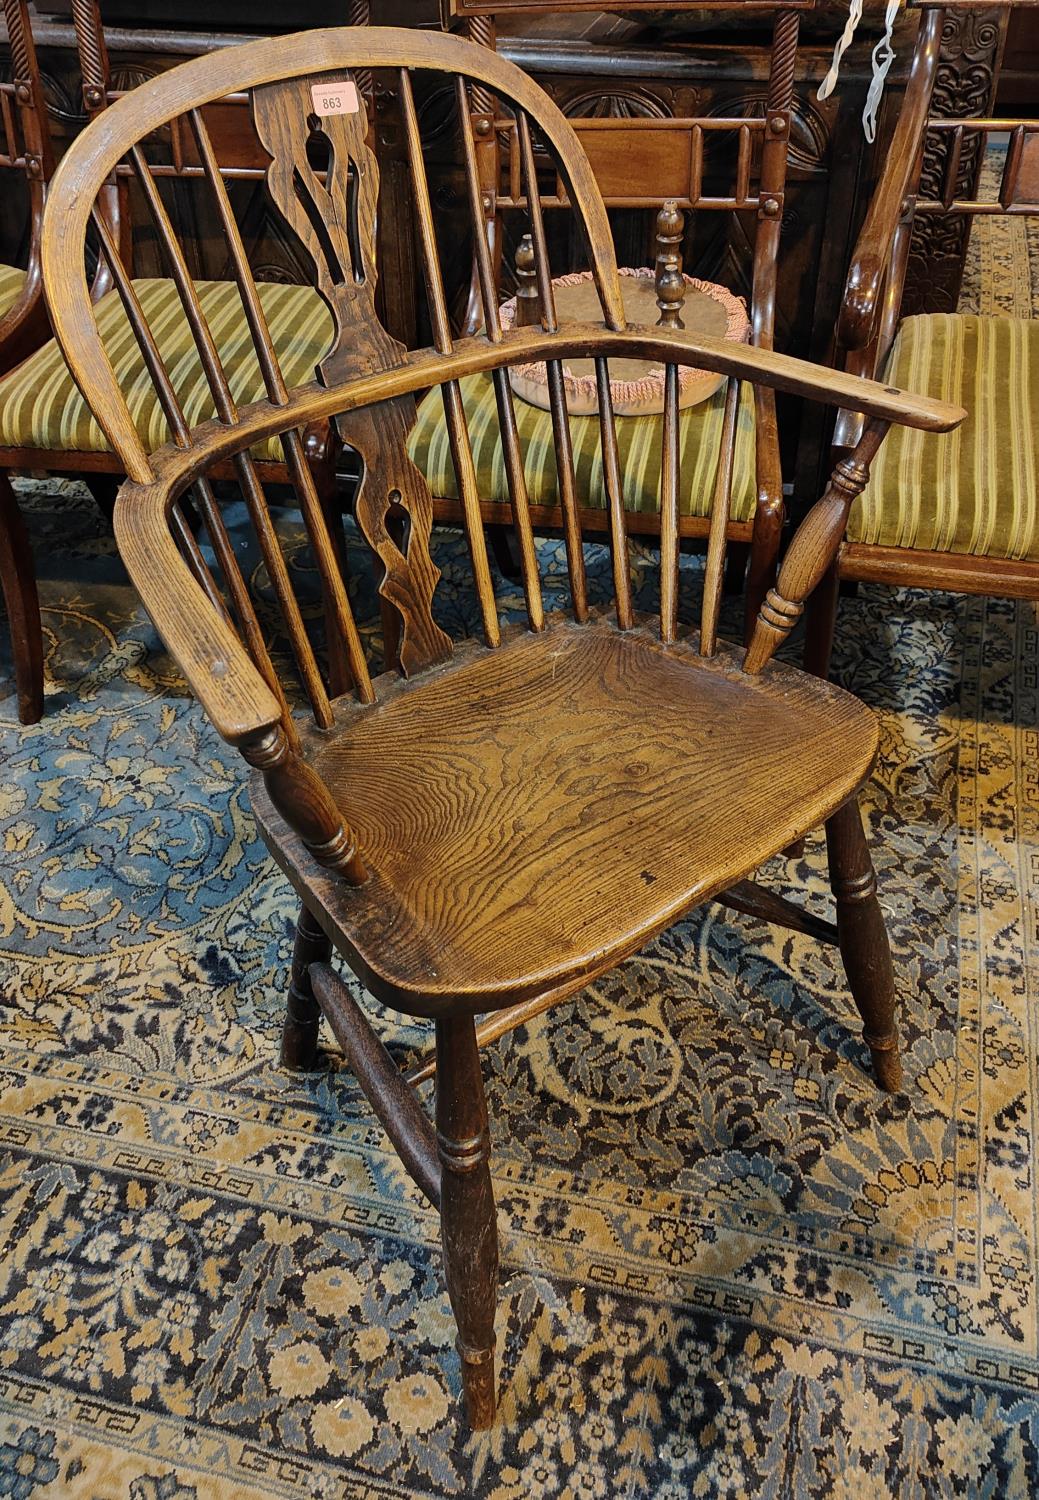 A 19th century elm Windsor armchair